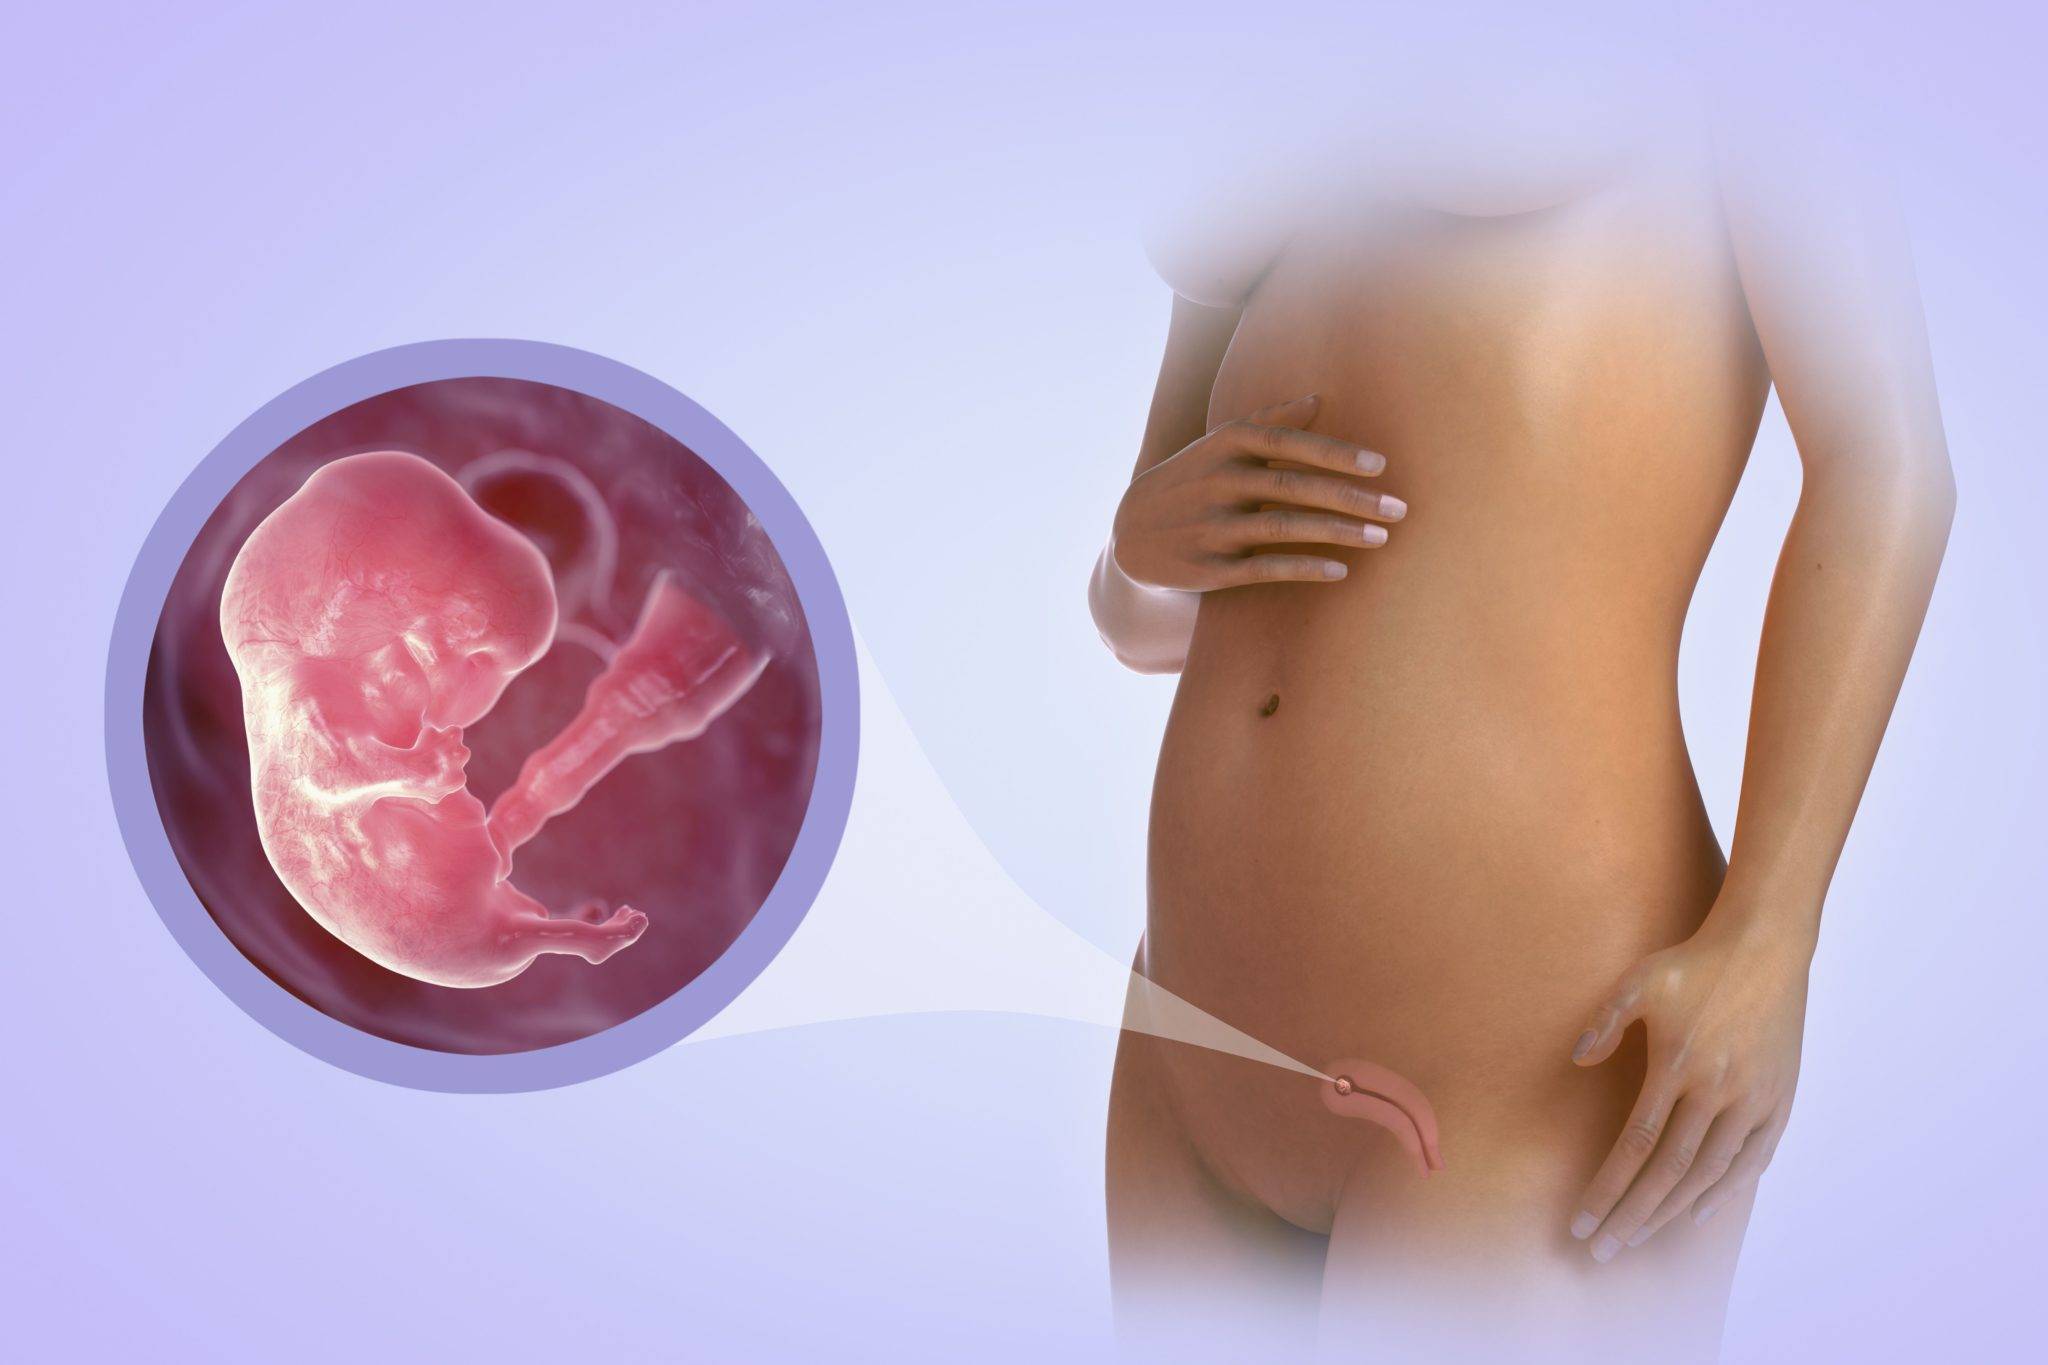 12 неделя беременности: ощущения, признаки, развитие плода